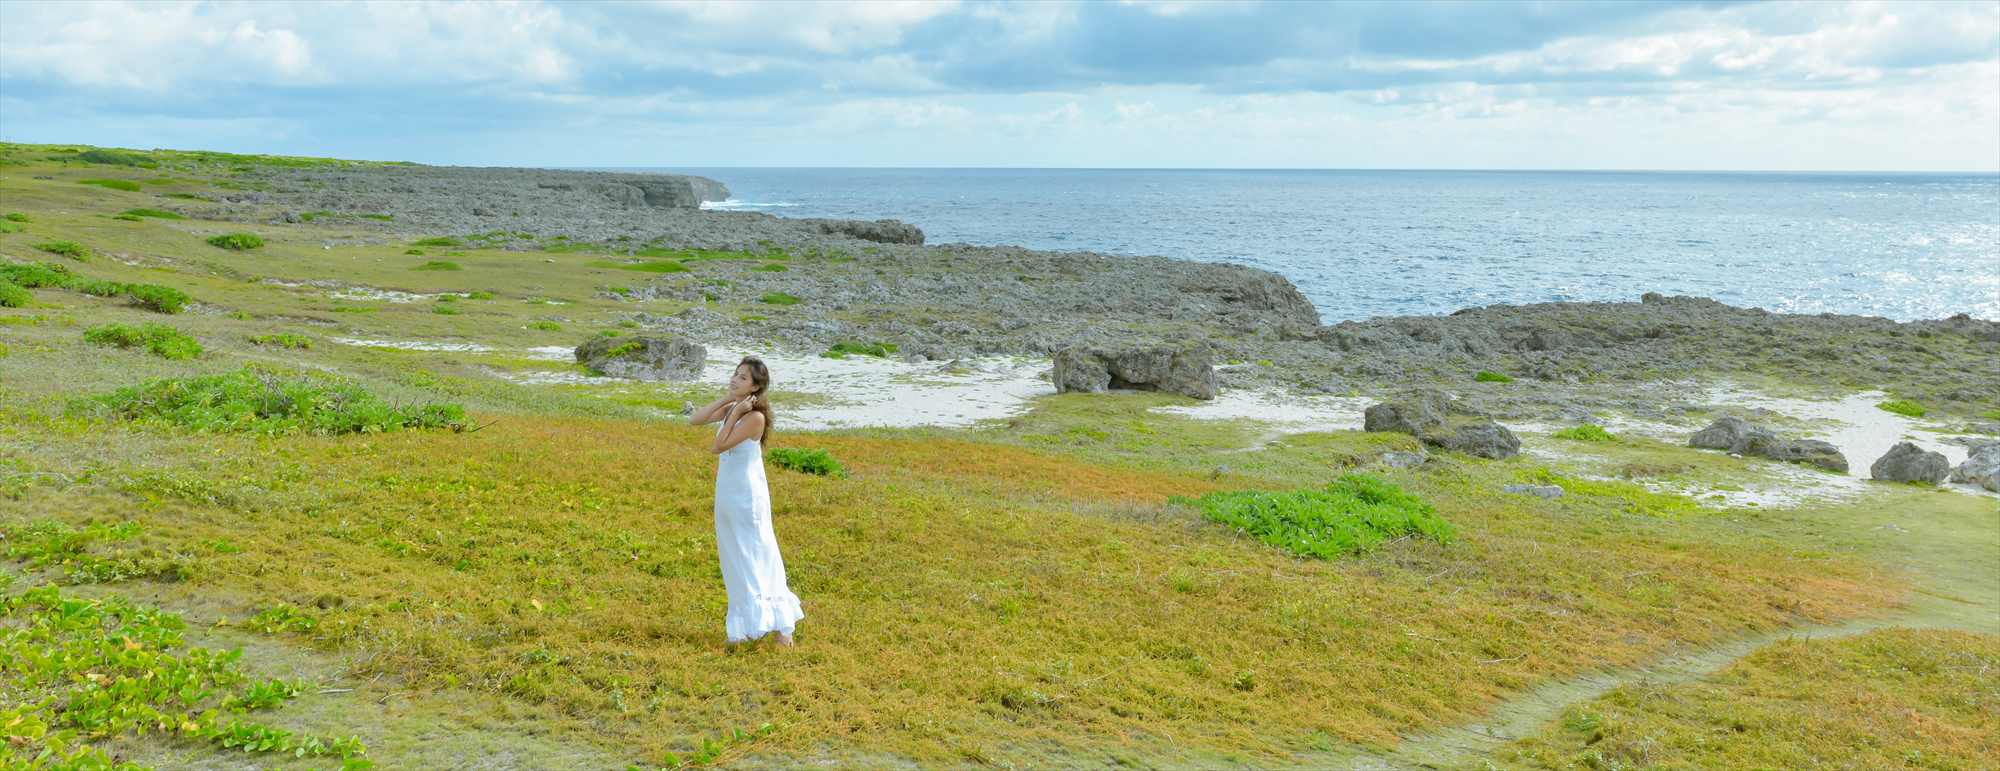 沖縄・波照間島フォトウェディング・挙式前撮影・結婚写真